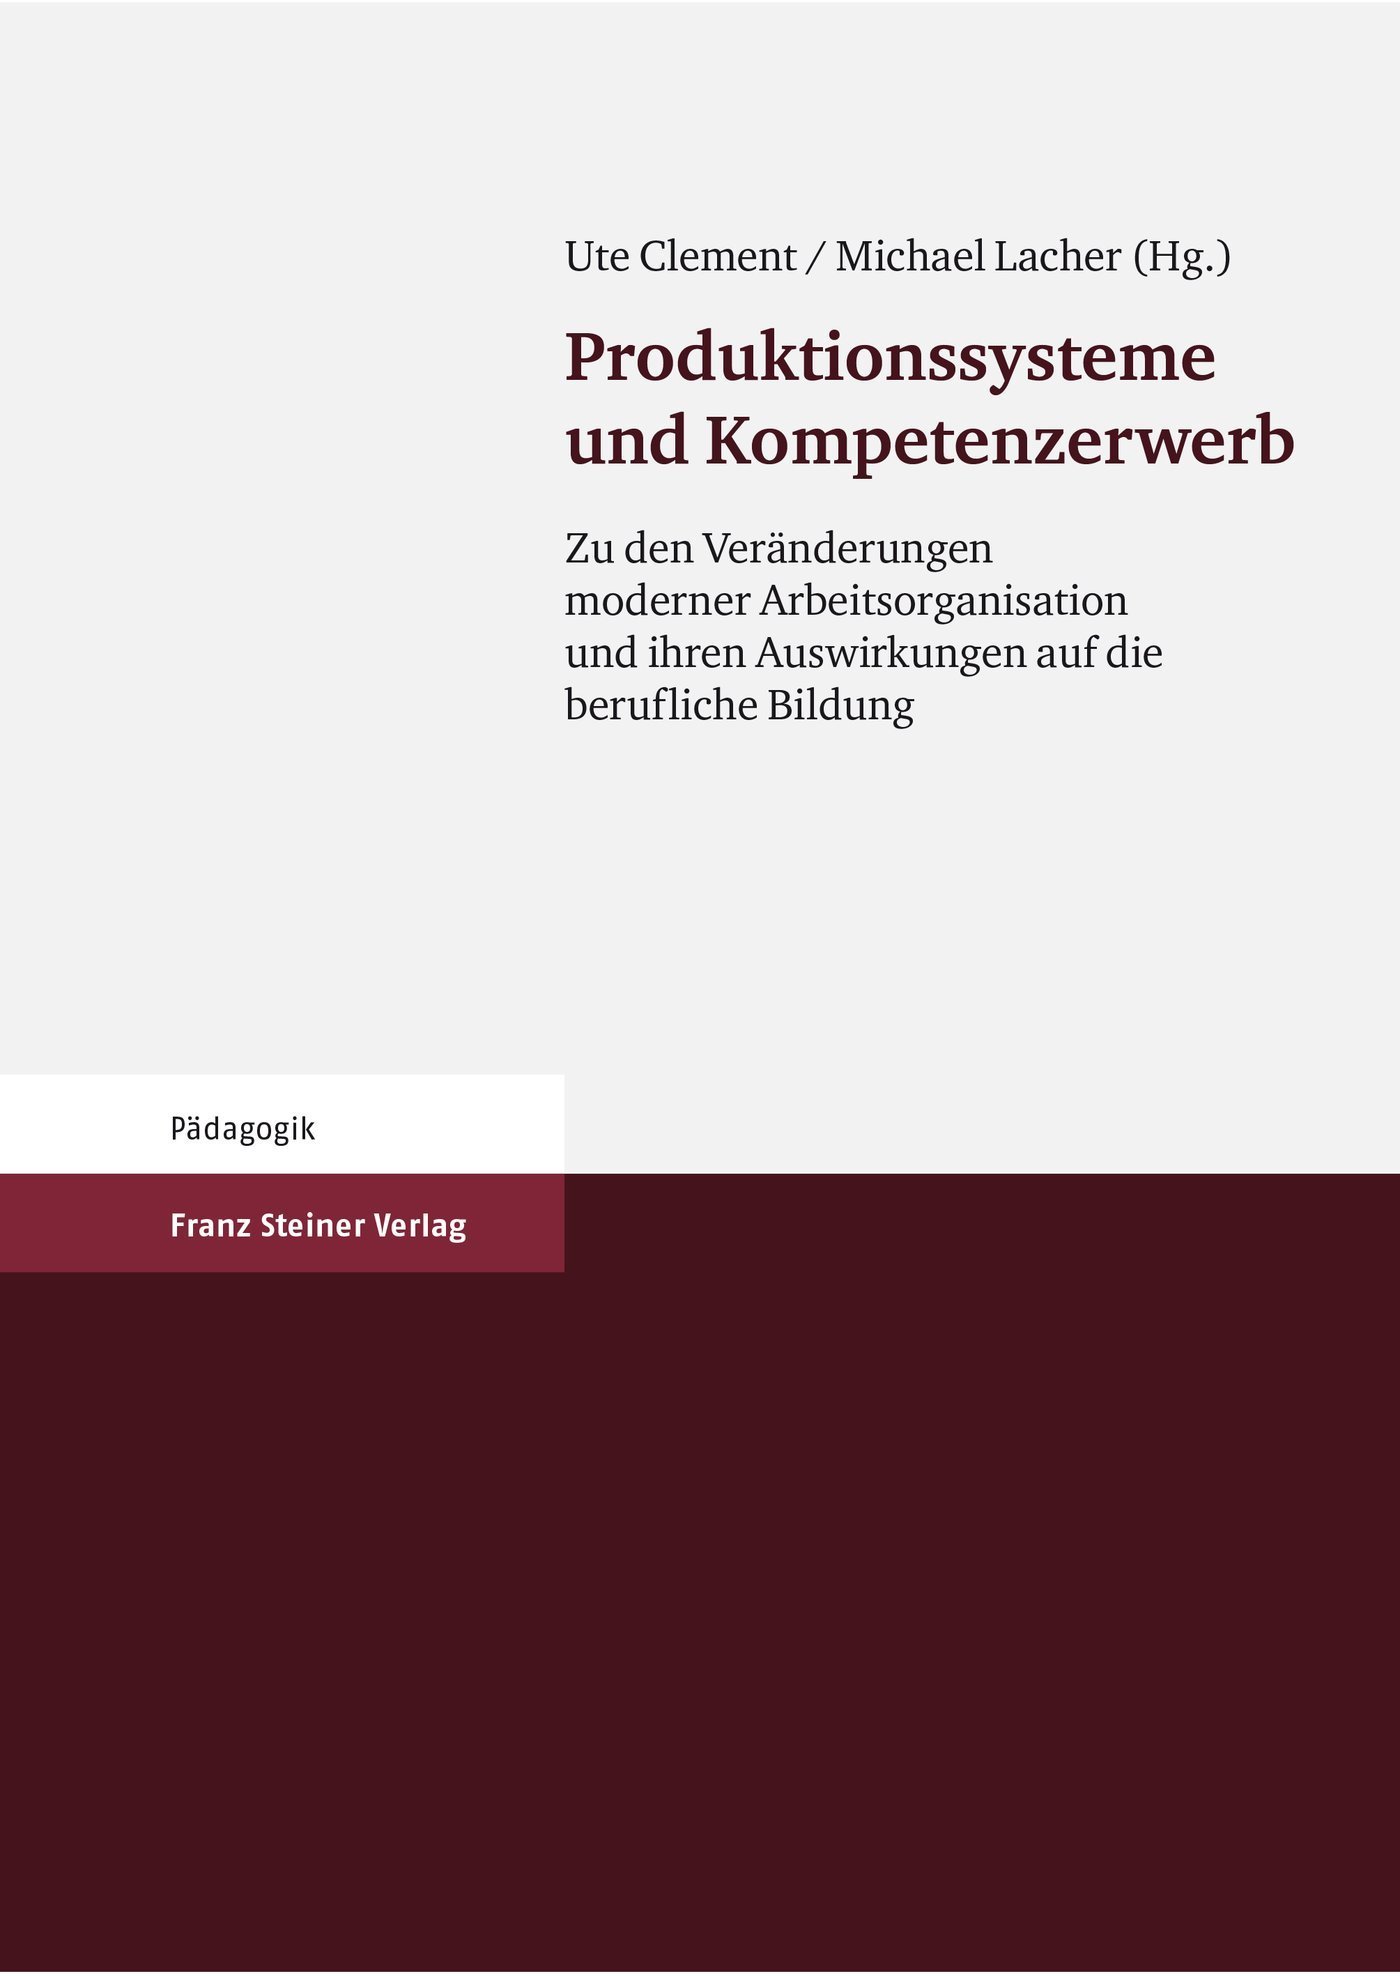 Produktionssysteme und Kompetenzerwerb